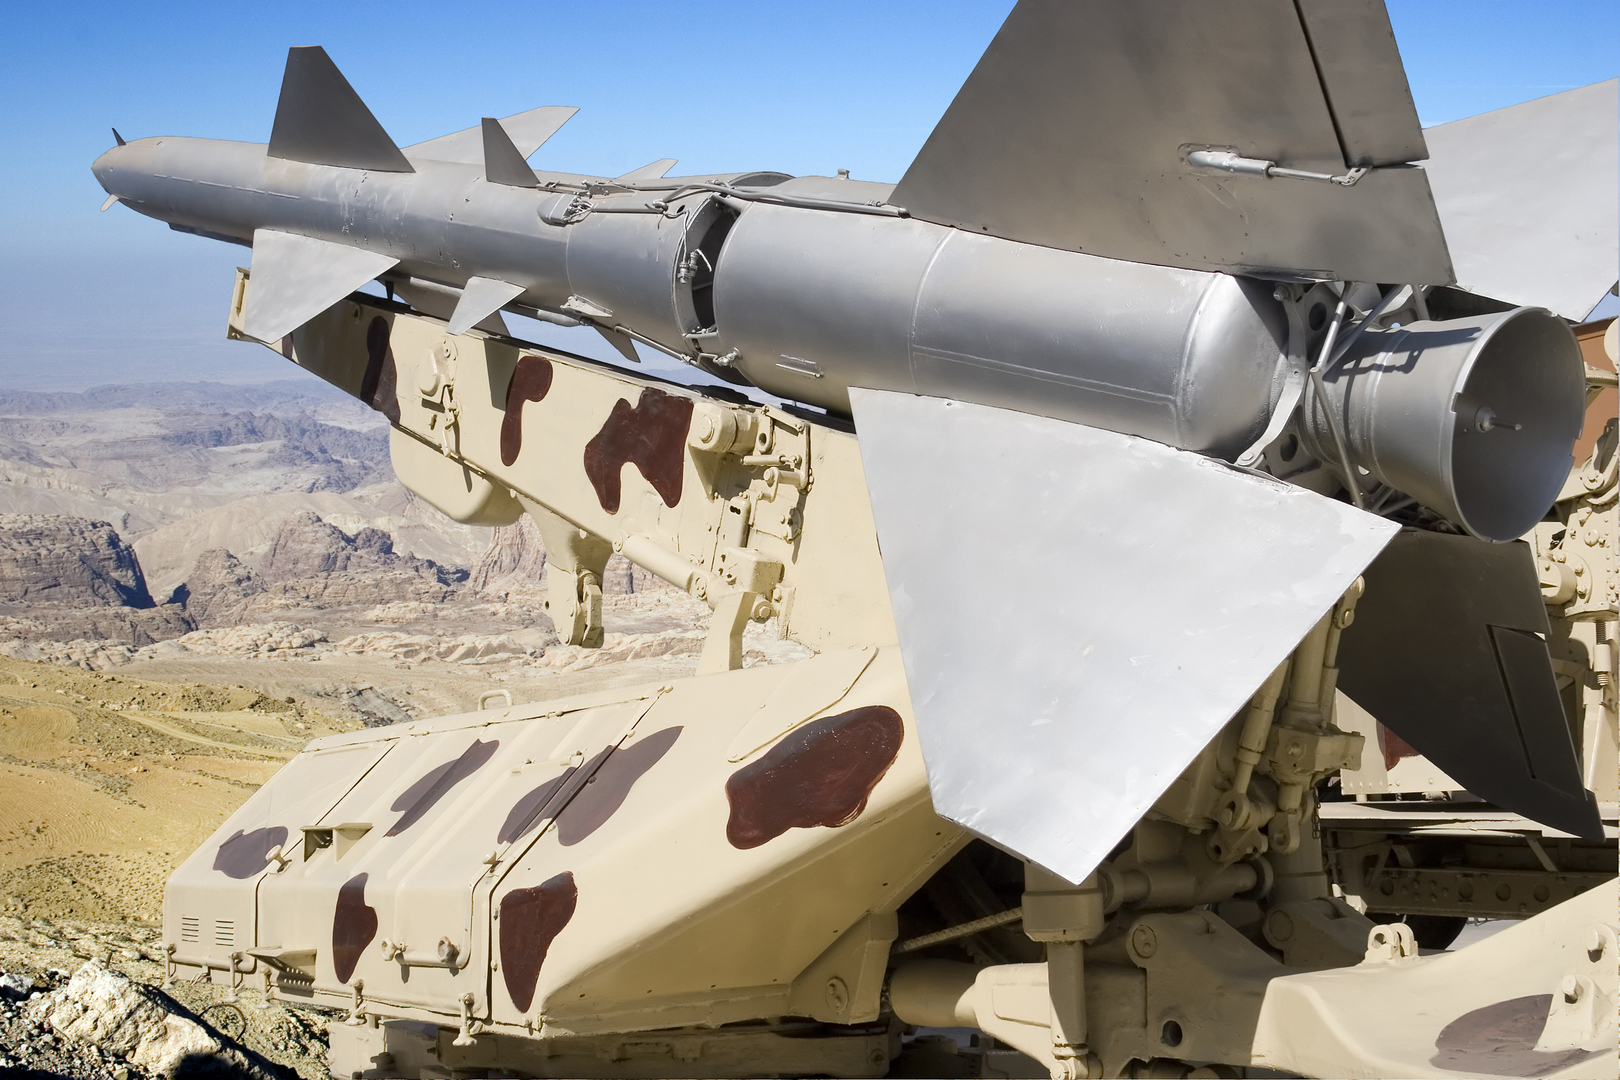 إسرائيل ترصد مواقع عسكرية مصرية لإطلاق صواريخ باليستية (صور)